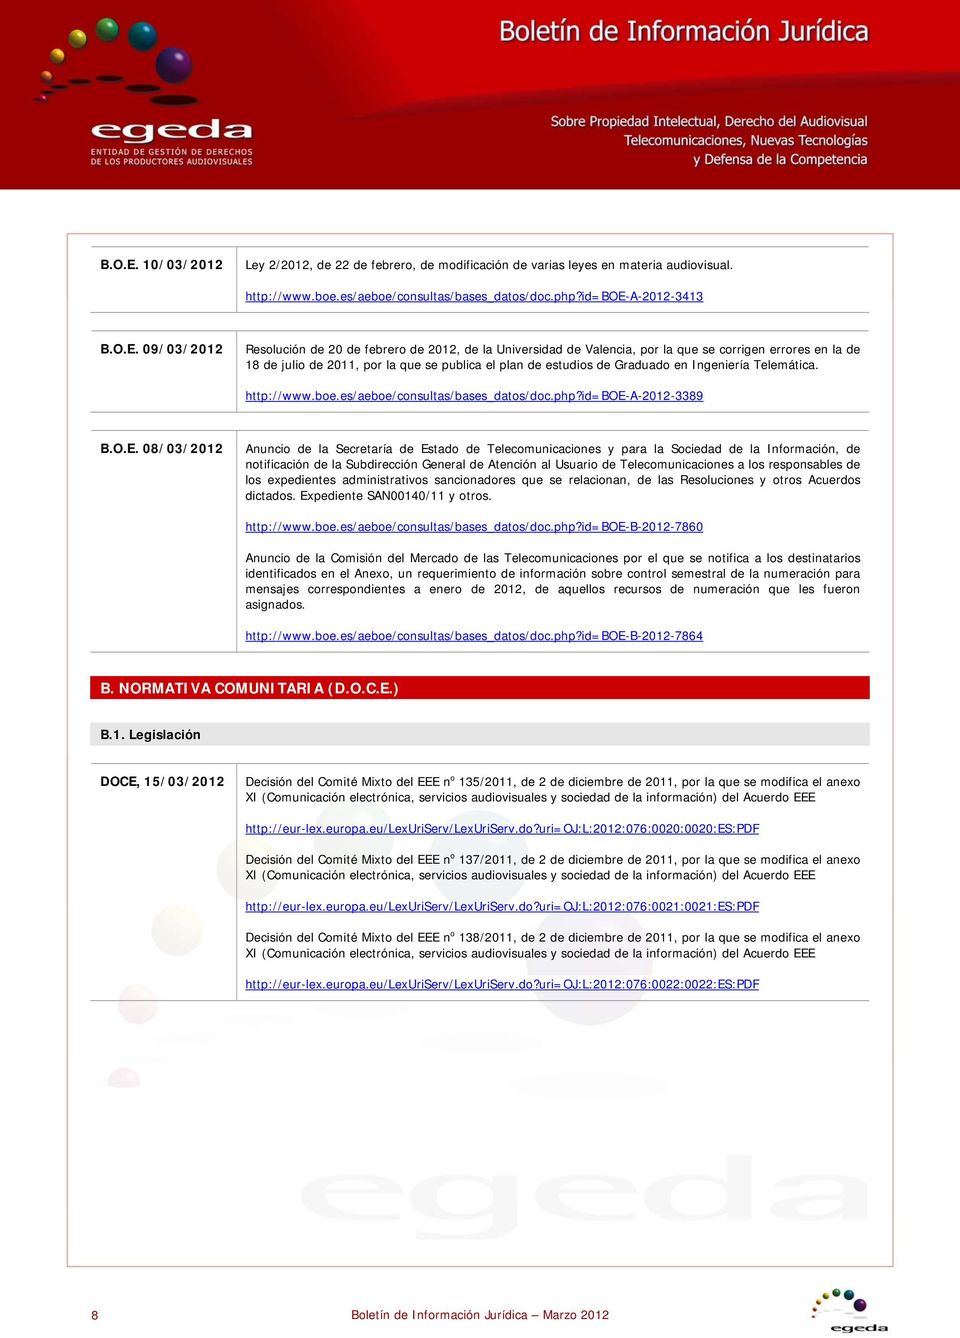 id=boe-a-2012-3413  09/03/2012 Resolución de 20 de febrero de 2012, de la Universidad de Valencia, por la que se corrigen errores en la de 18 de julio de 2011, por la que se publica el plan de